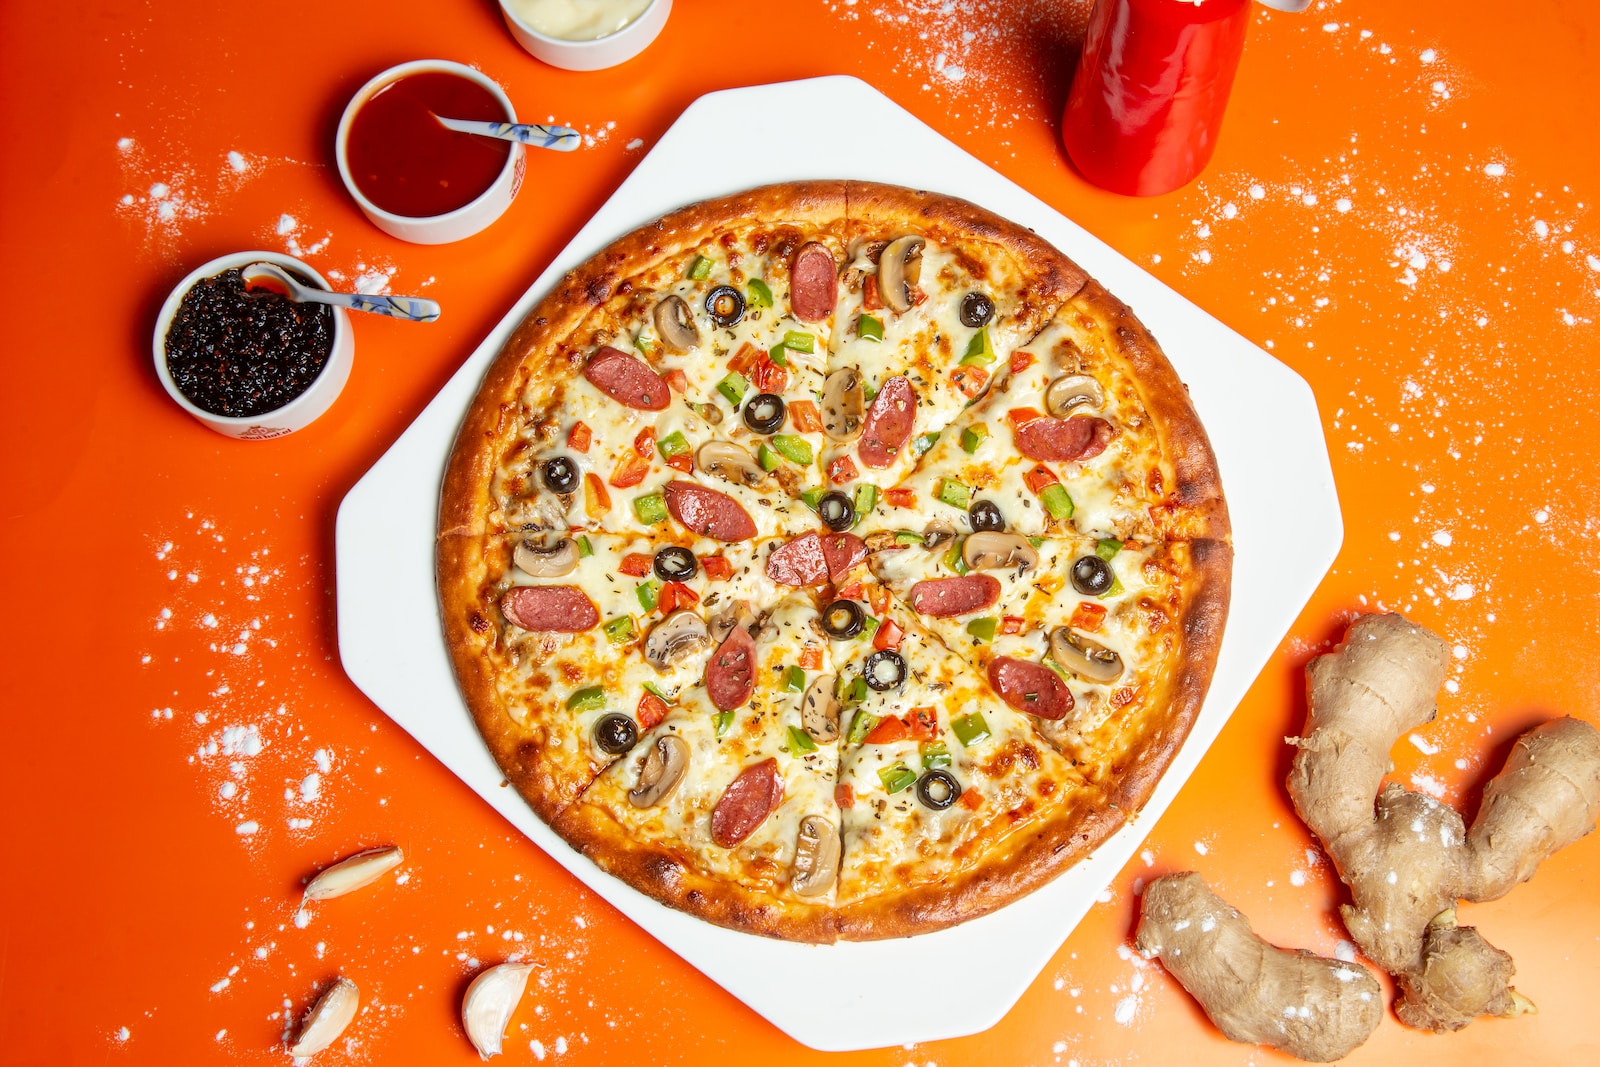 Jakie dania idealnie komponują się z pizzą?